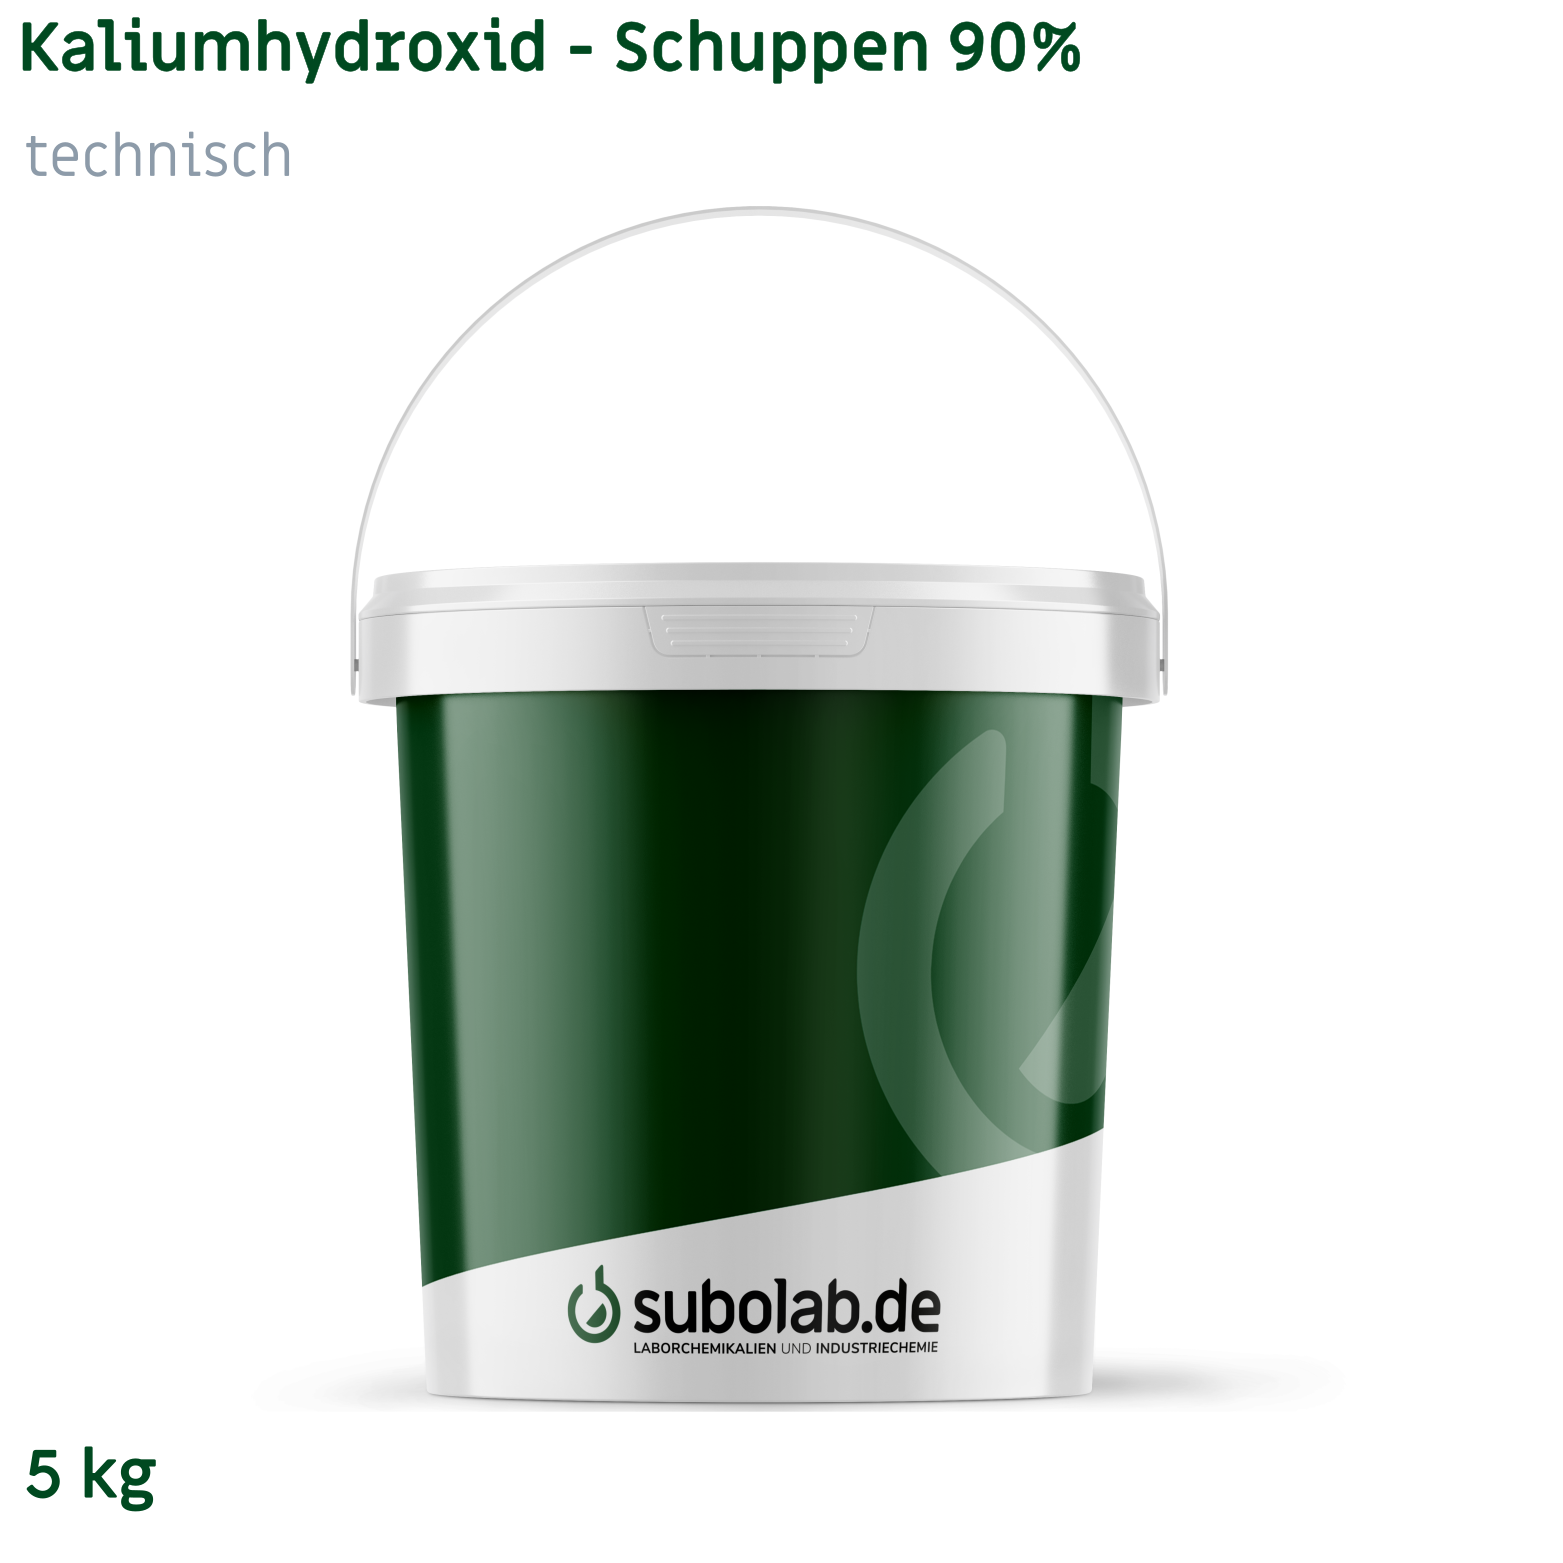 Bild von Kaliumhydroxid - Schuppen 90% technisch (5 kg)